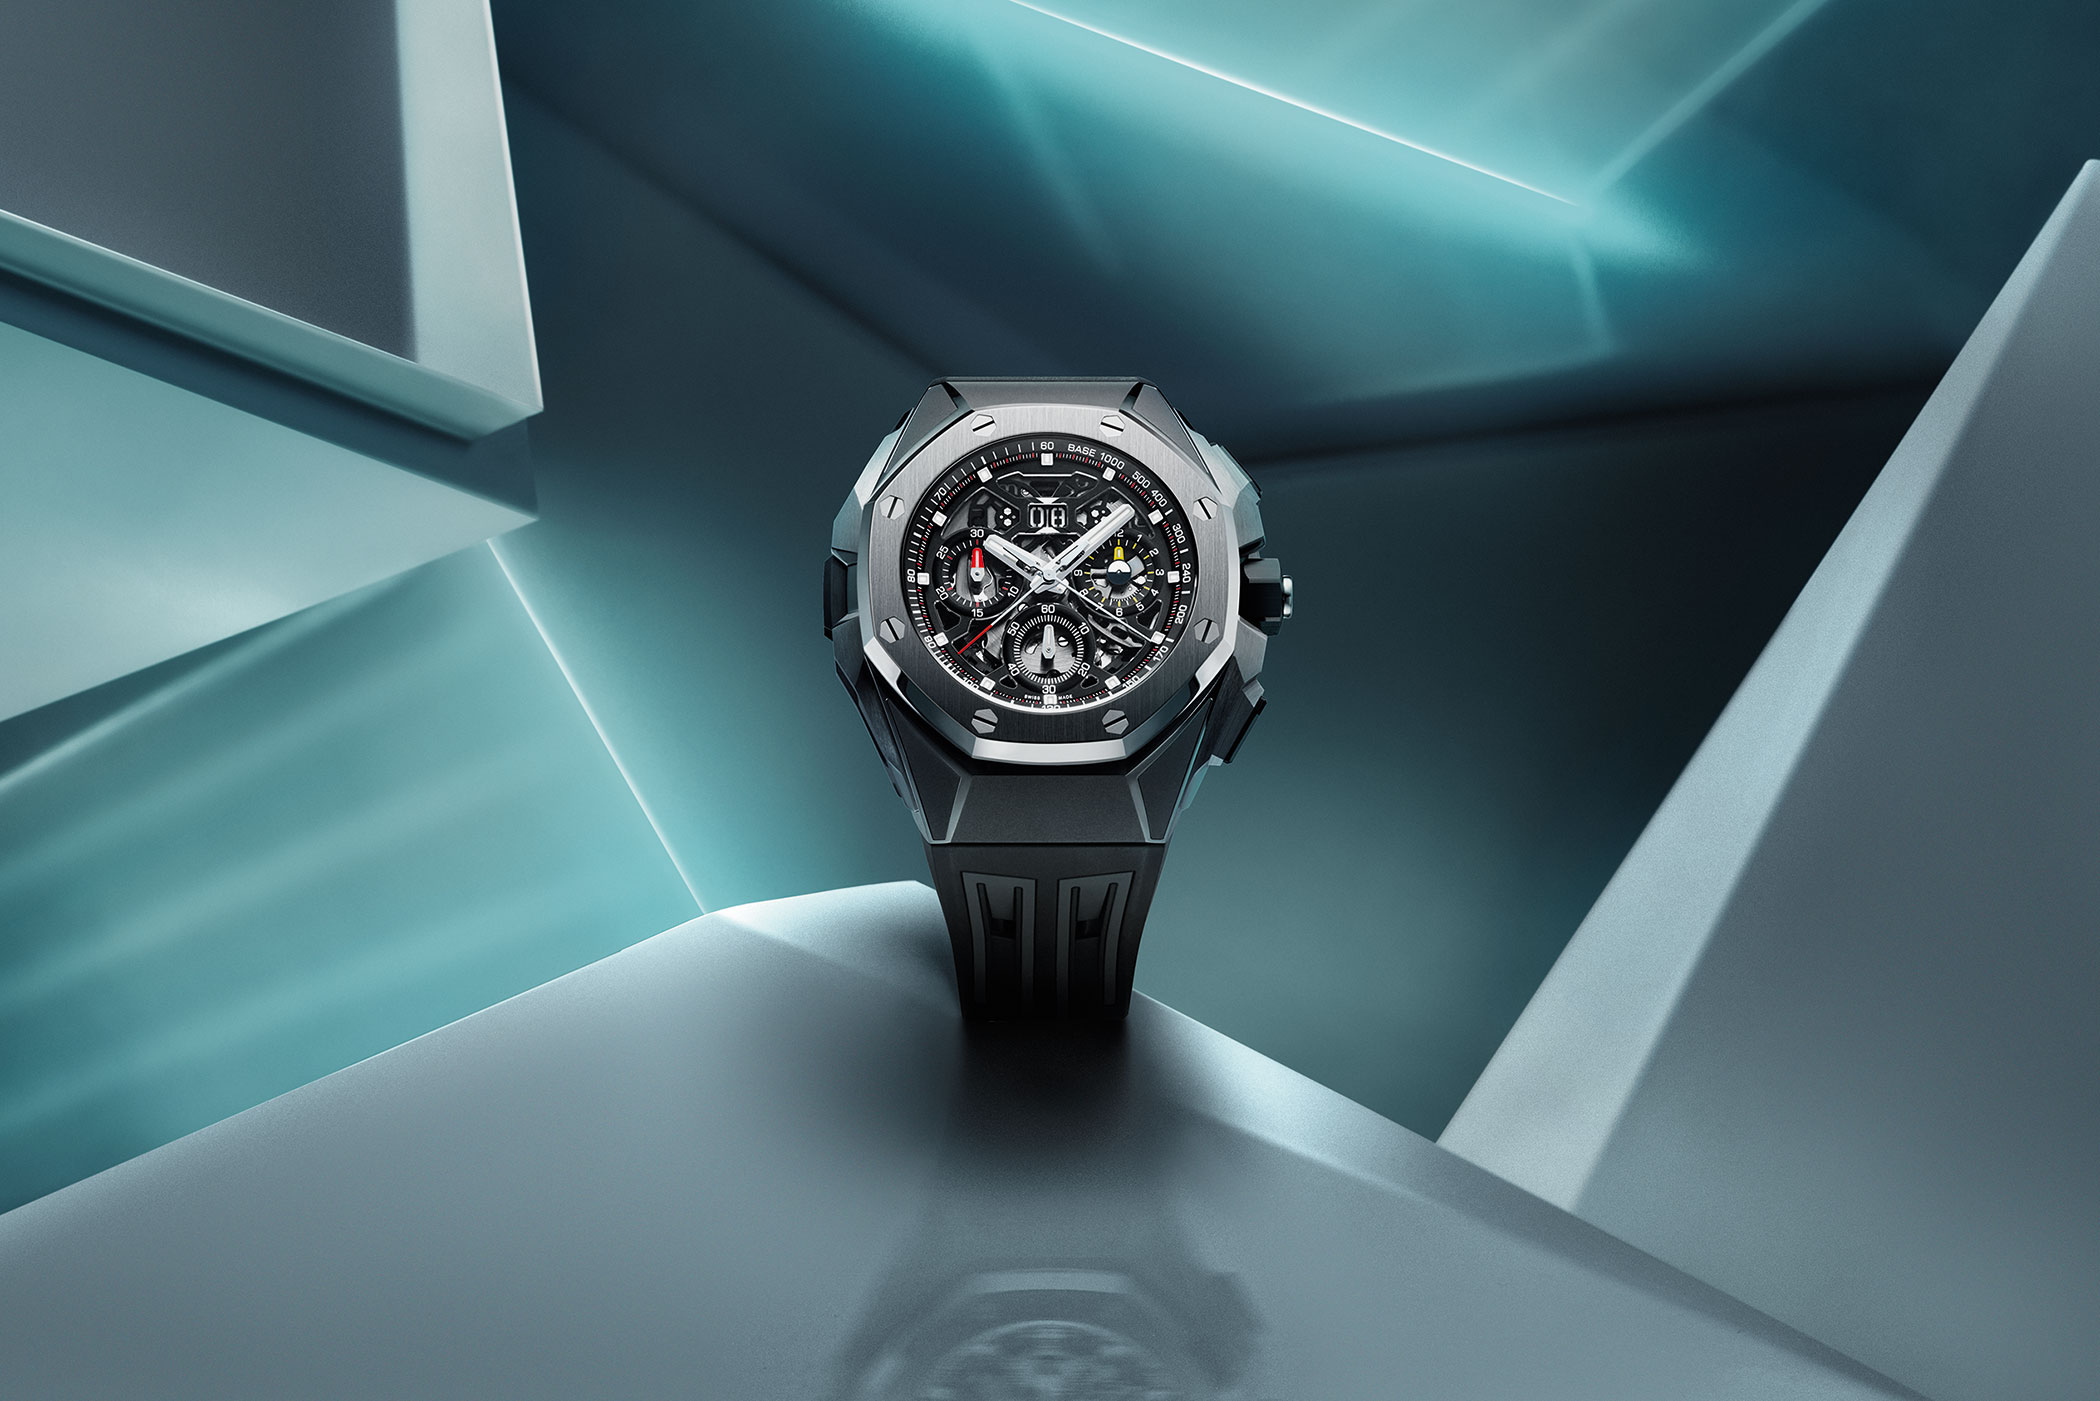 WX-1 Luxury Watch Concept from De Witt - Tuvie Design